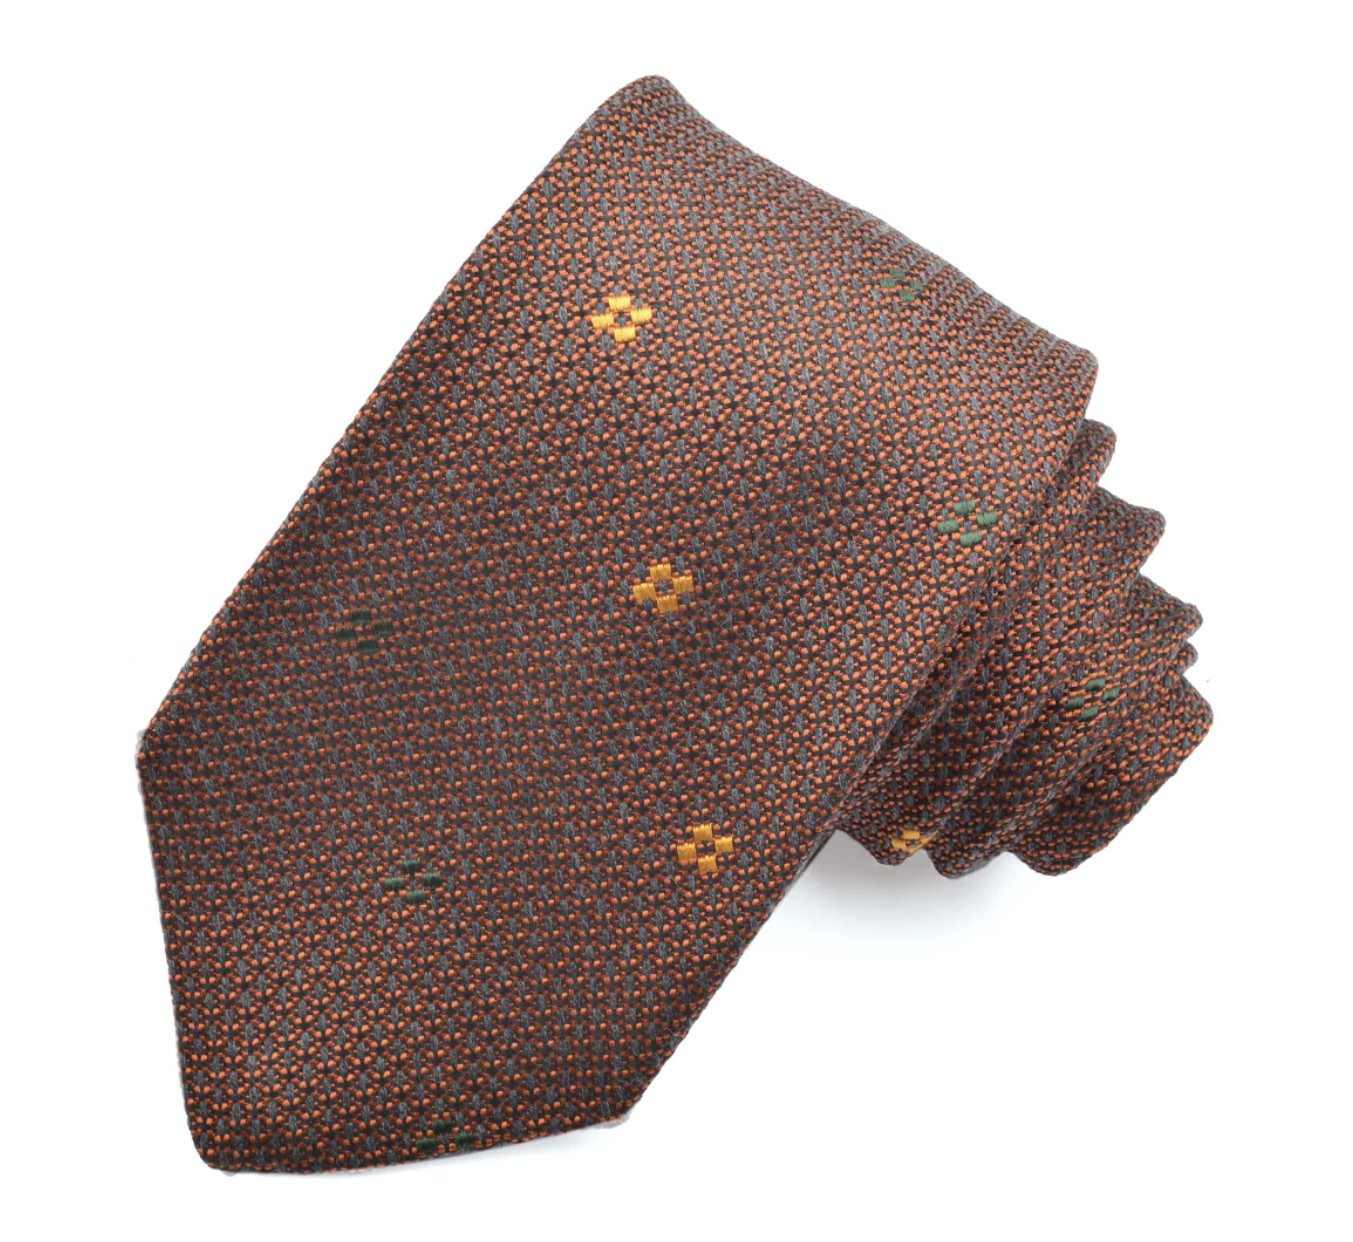 DION Orange Gold Square Tie - Benjamin's Menswear